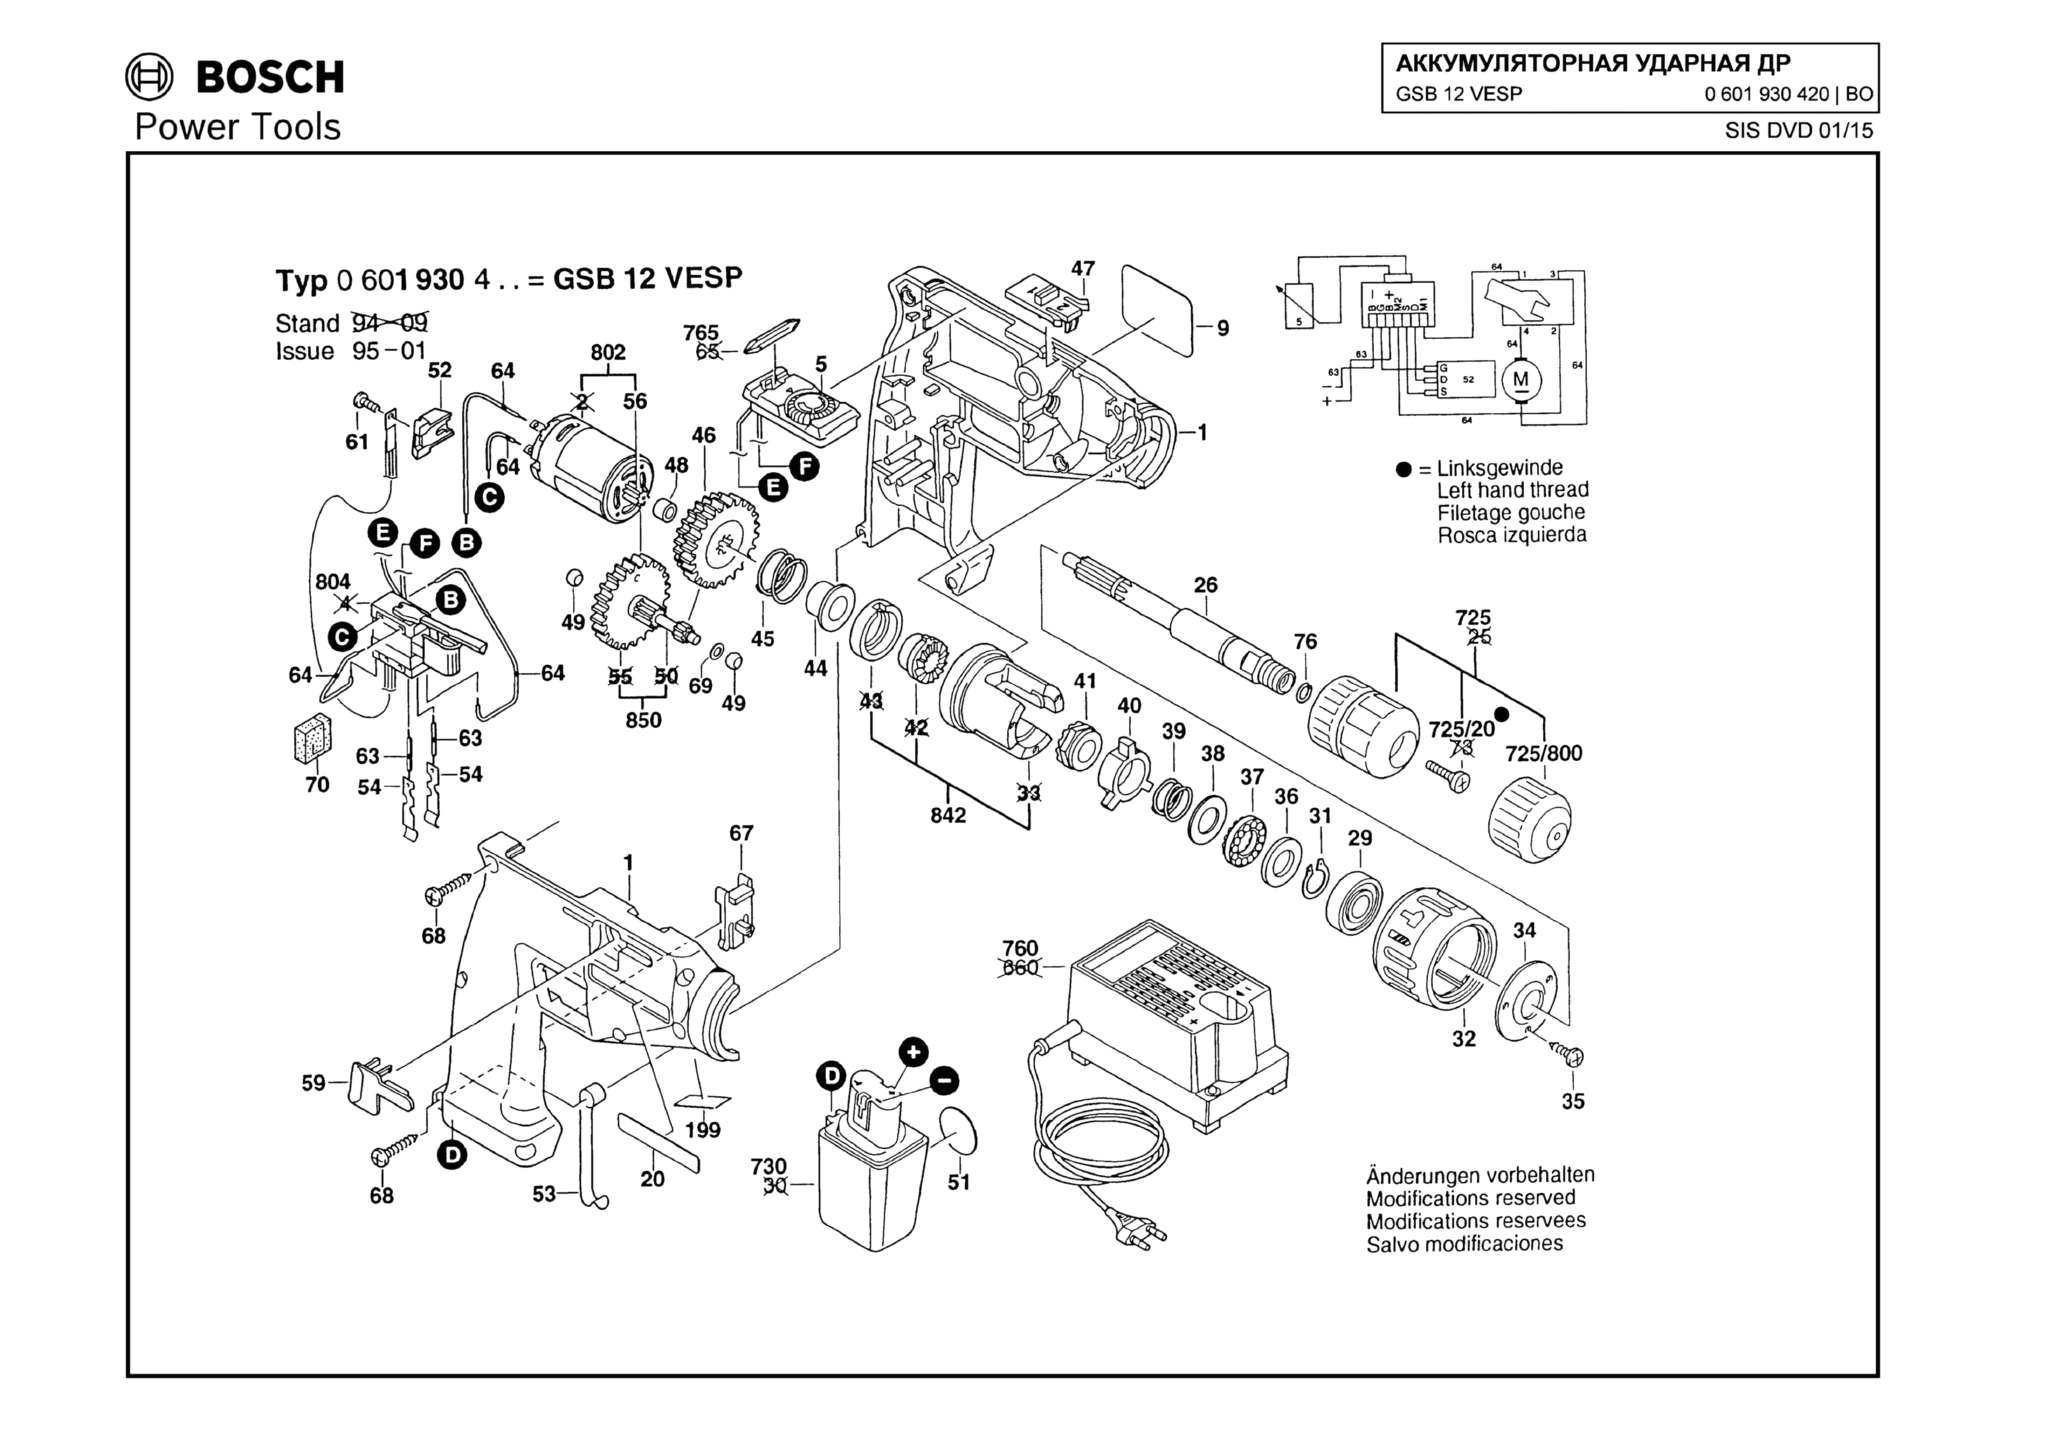 Запчасти, схема и деталировка Bosch GSB 12 VESP (ТИП 0601930420)